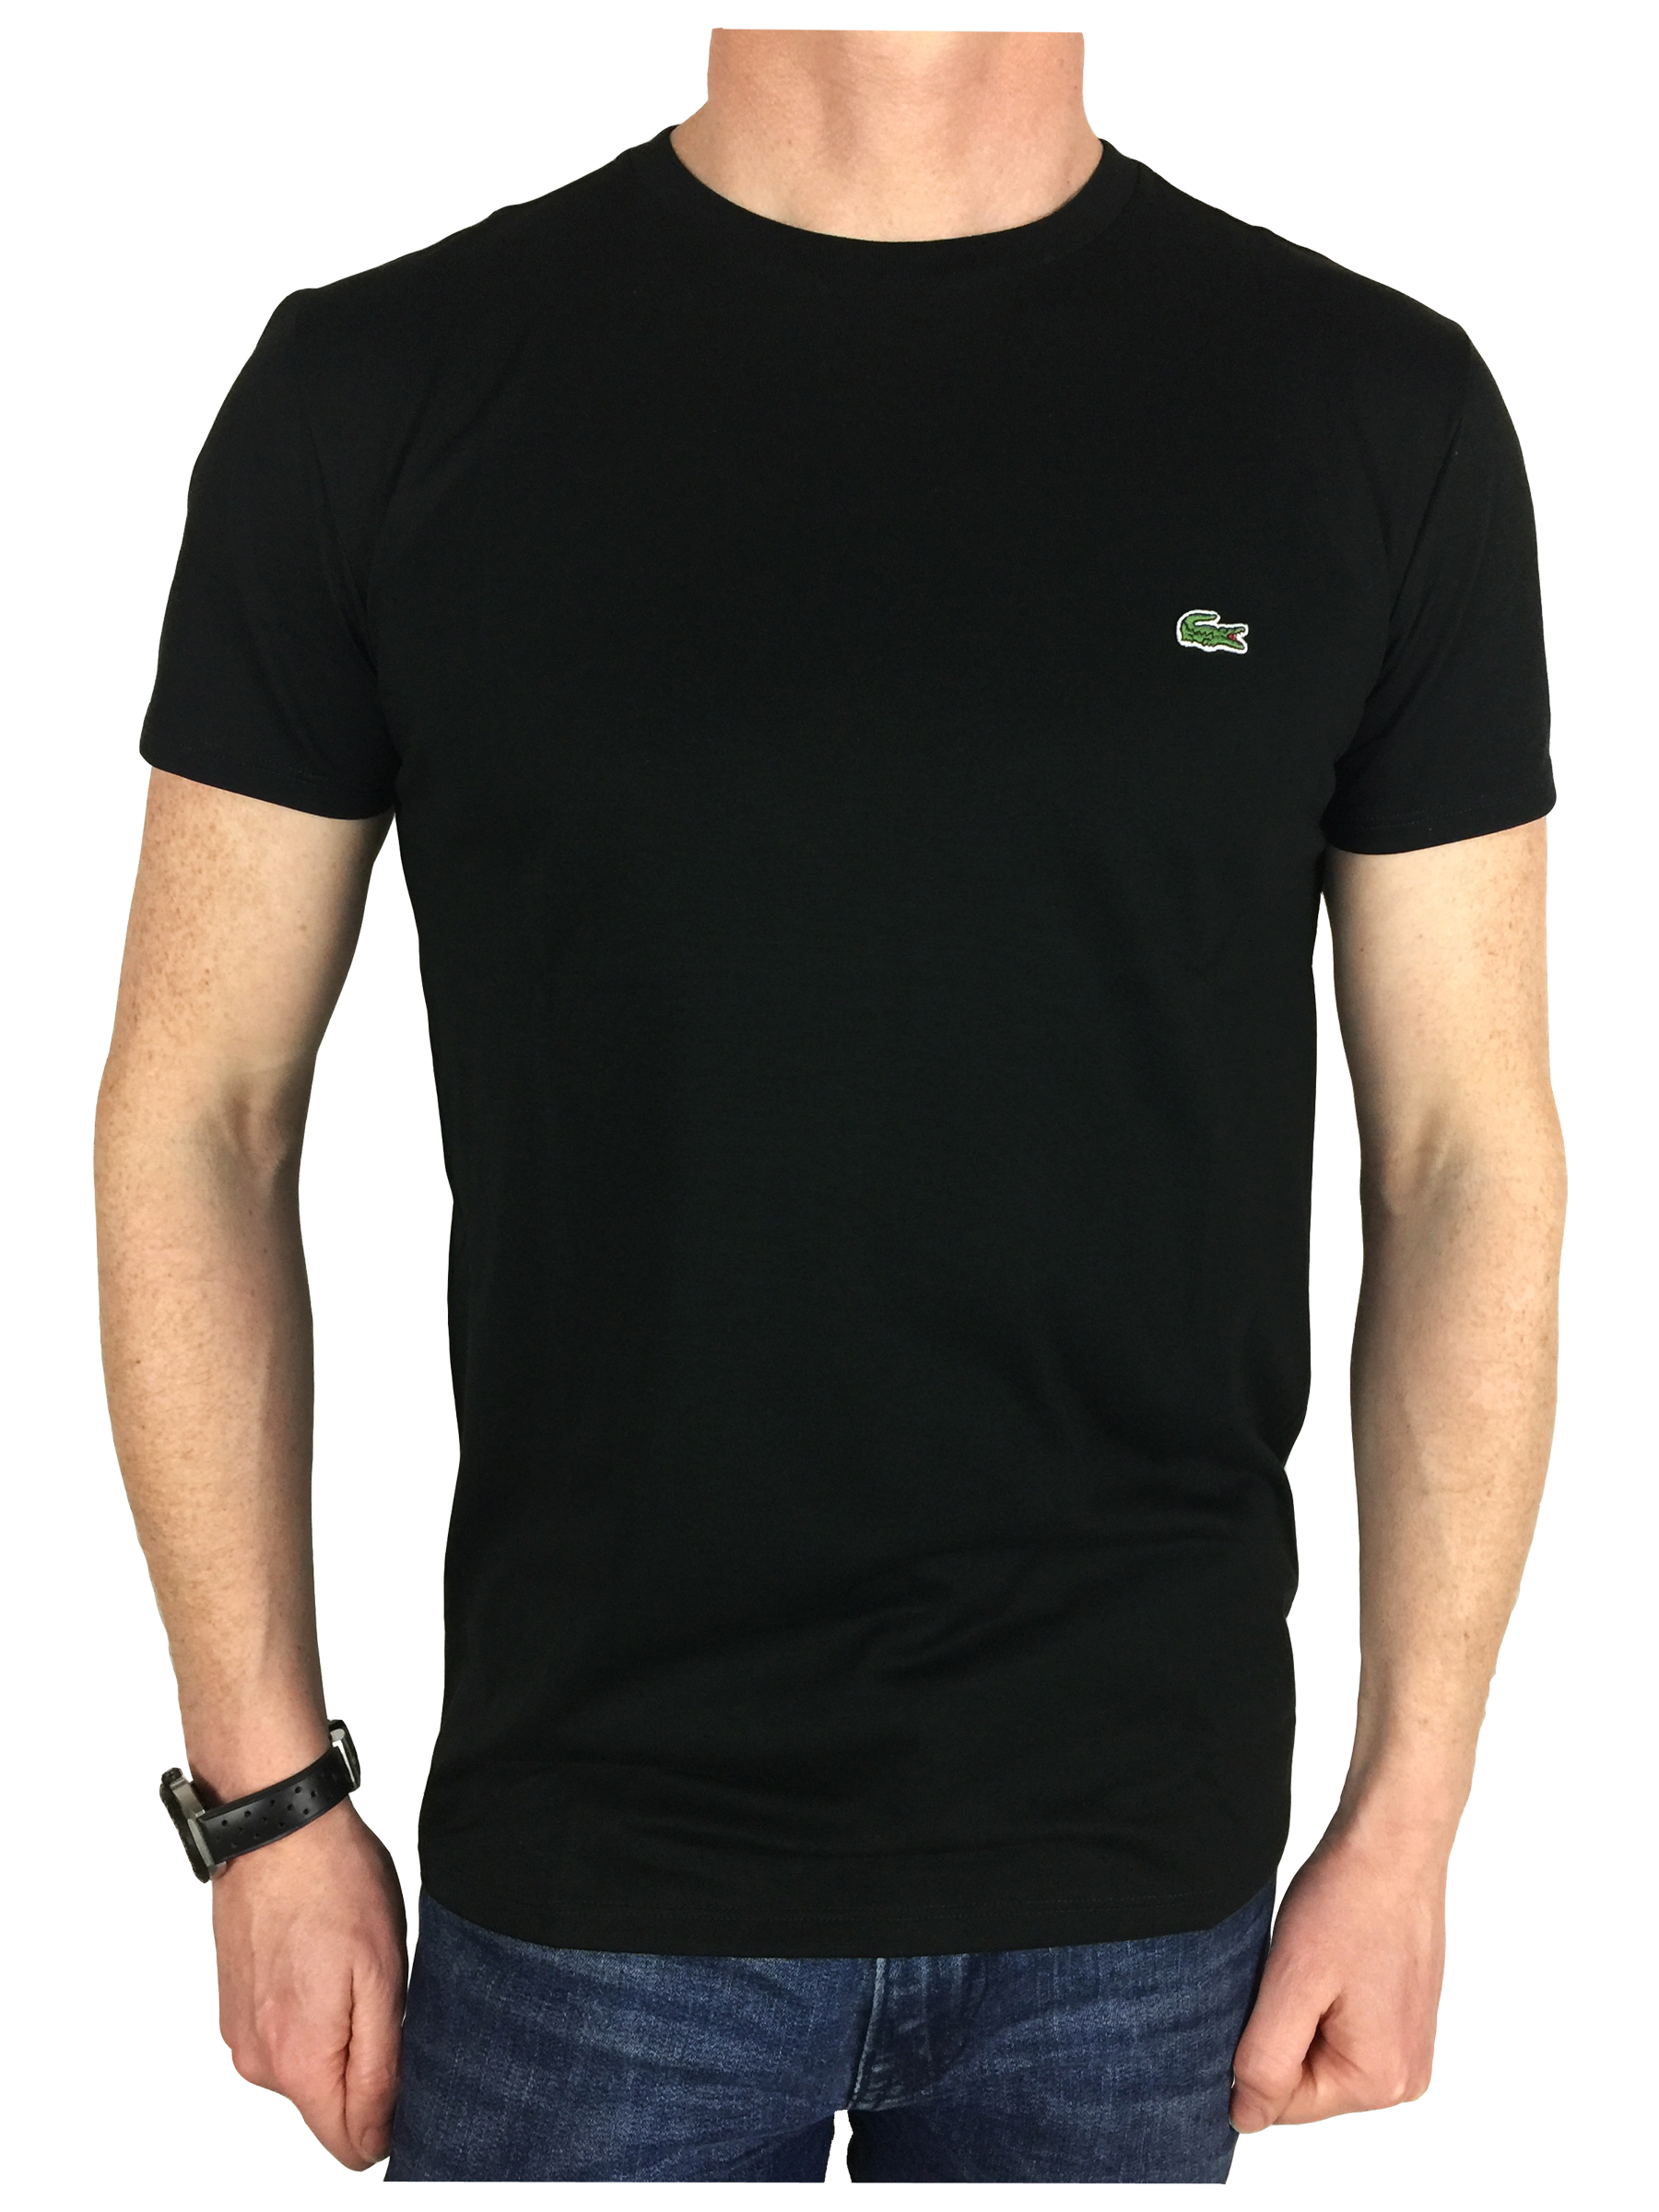 Lacoste TH6709 Soft Cotton T-Shirt Black 6 (XL) for sale online | eBay